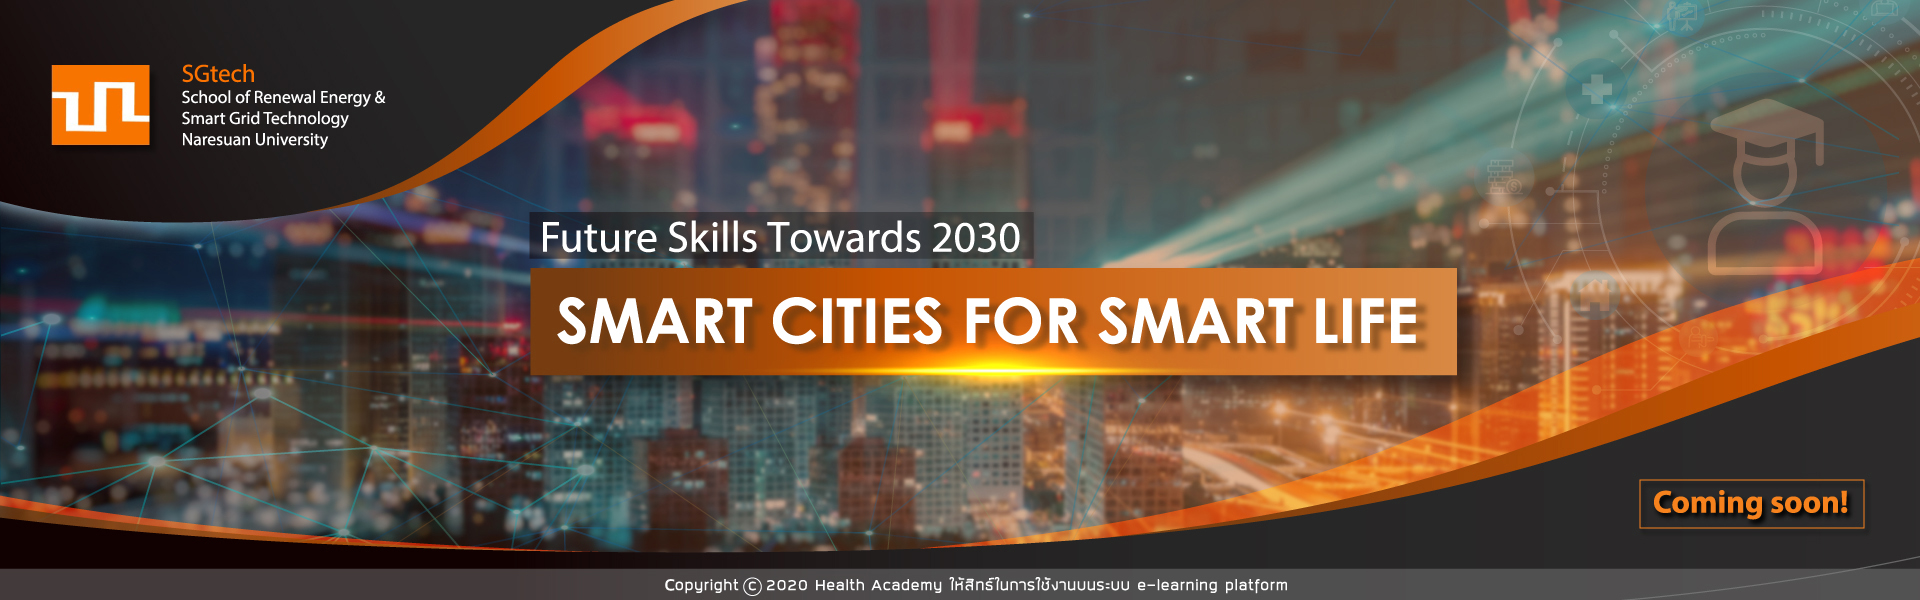 smart cities for smart life sgtech